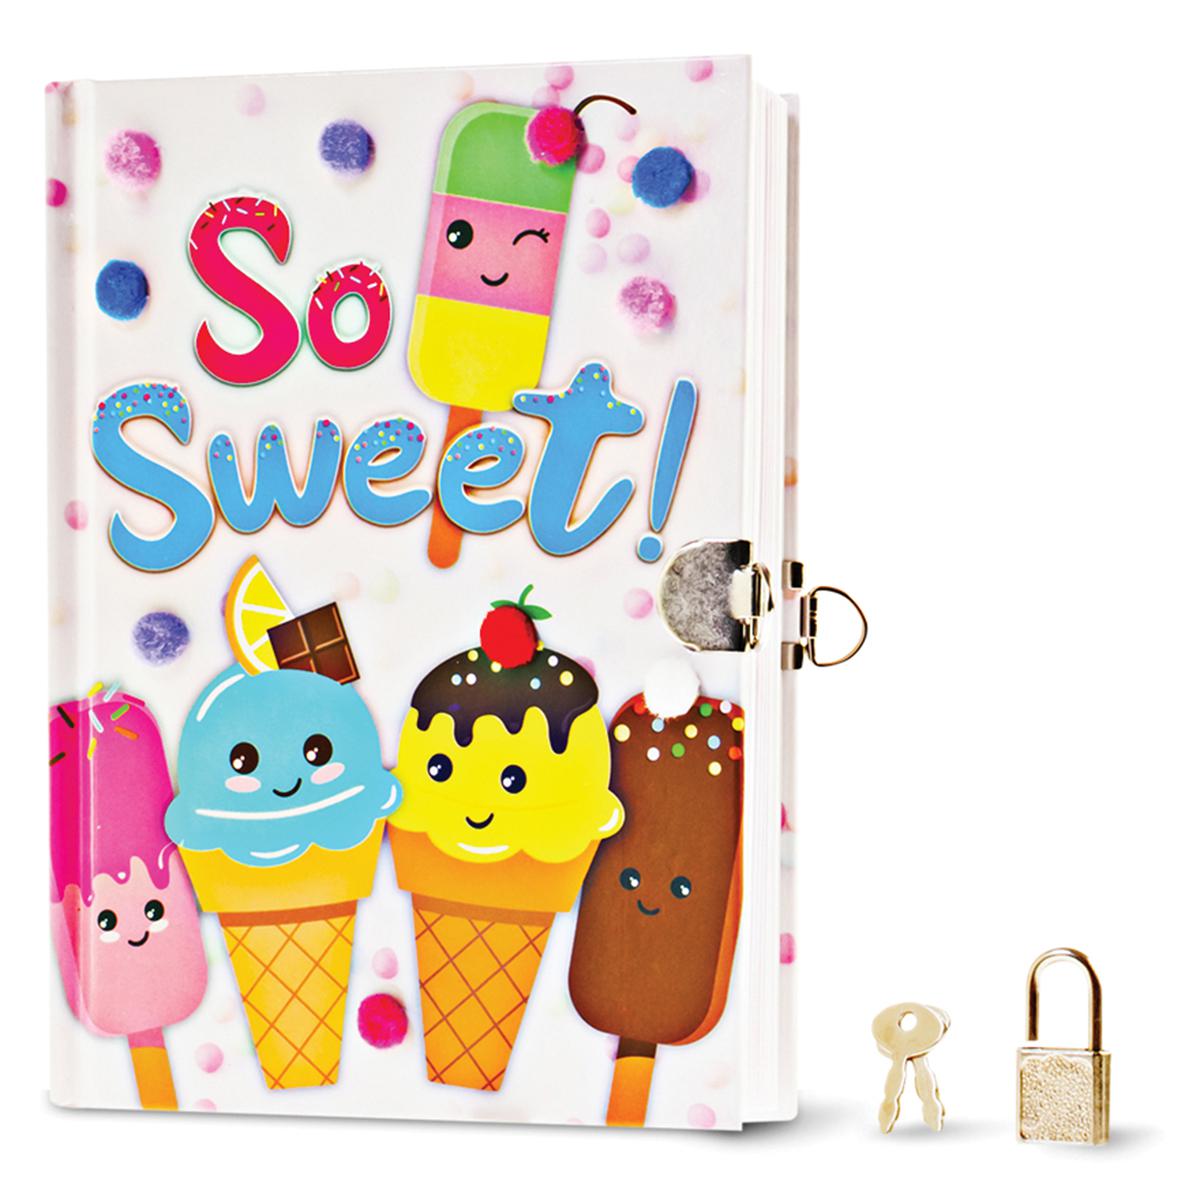  So Sweet! Pom-Pom Diary 